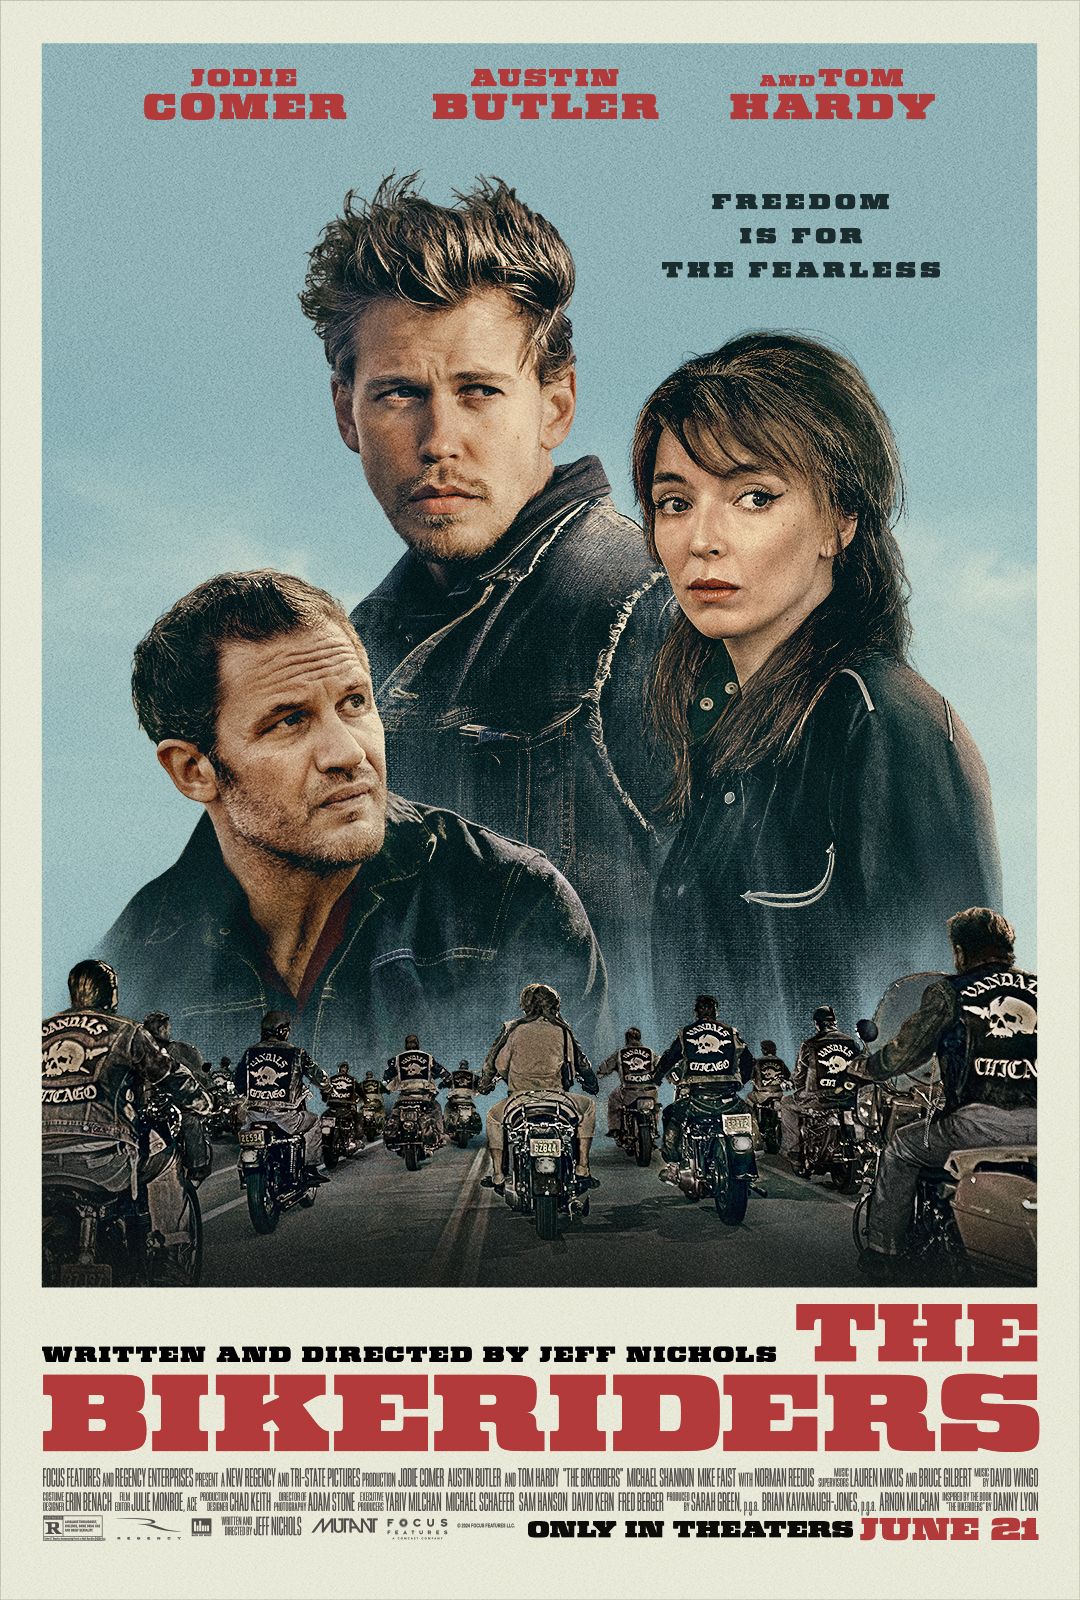 Pôster do filme The Bike Riders mostrando Jodie Comer, Austin Butler e Tom Hardy com uma gangue de motociclistas